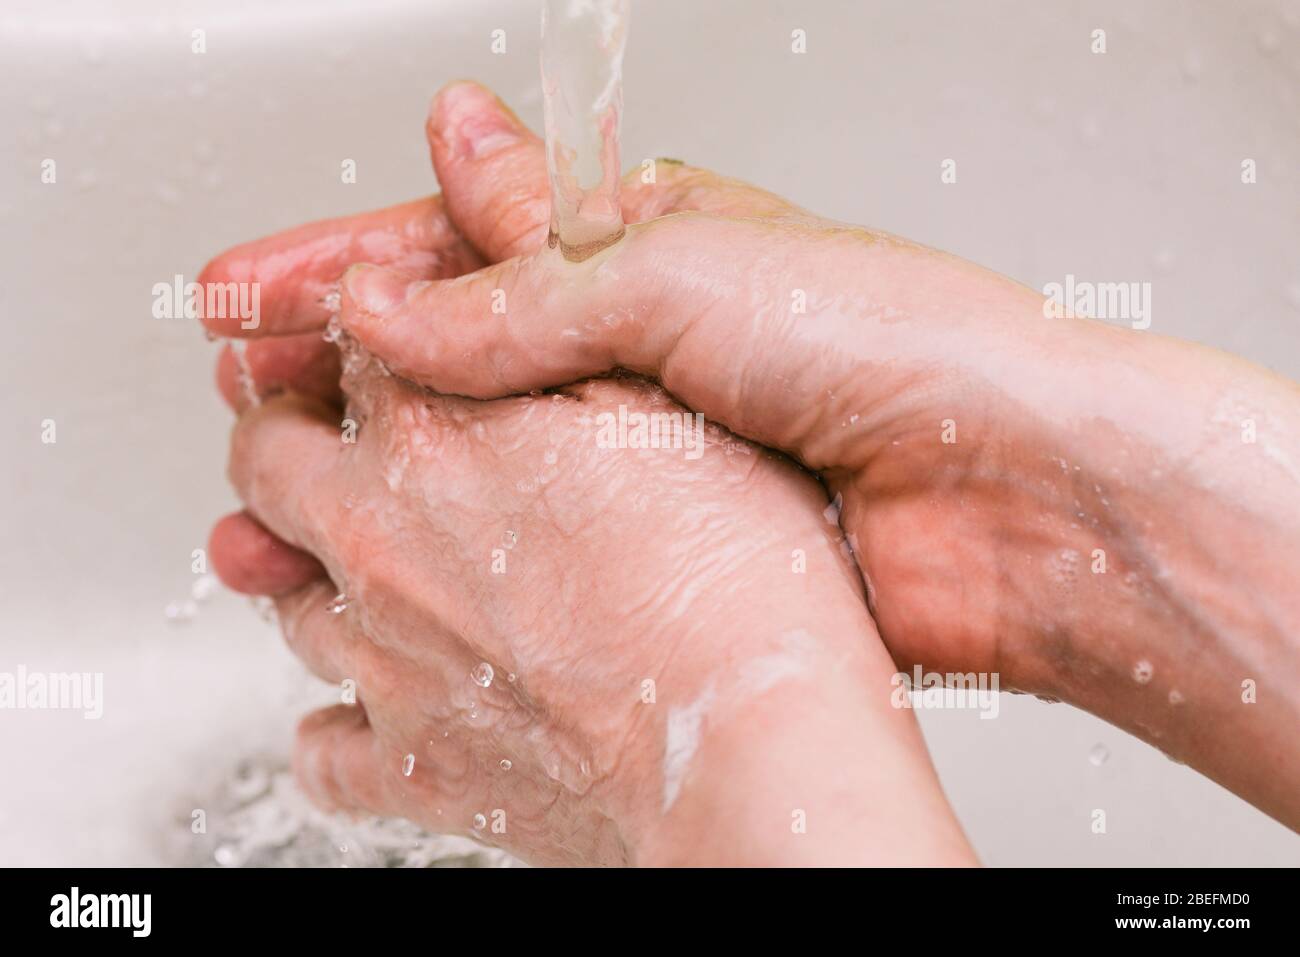 Die Hand des Mannes unter dem Wasserhahn mit Wasser. Hände nass machen und Wasser sprühen. Persönliche Hygiene und Prävention von Coronavirus-Krankheit Stockfoto